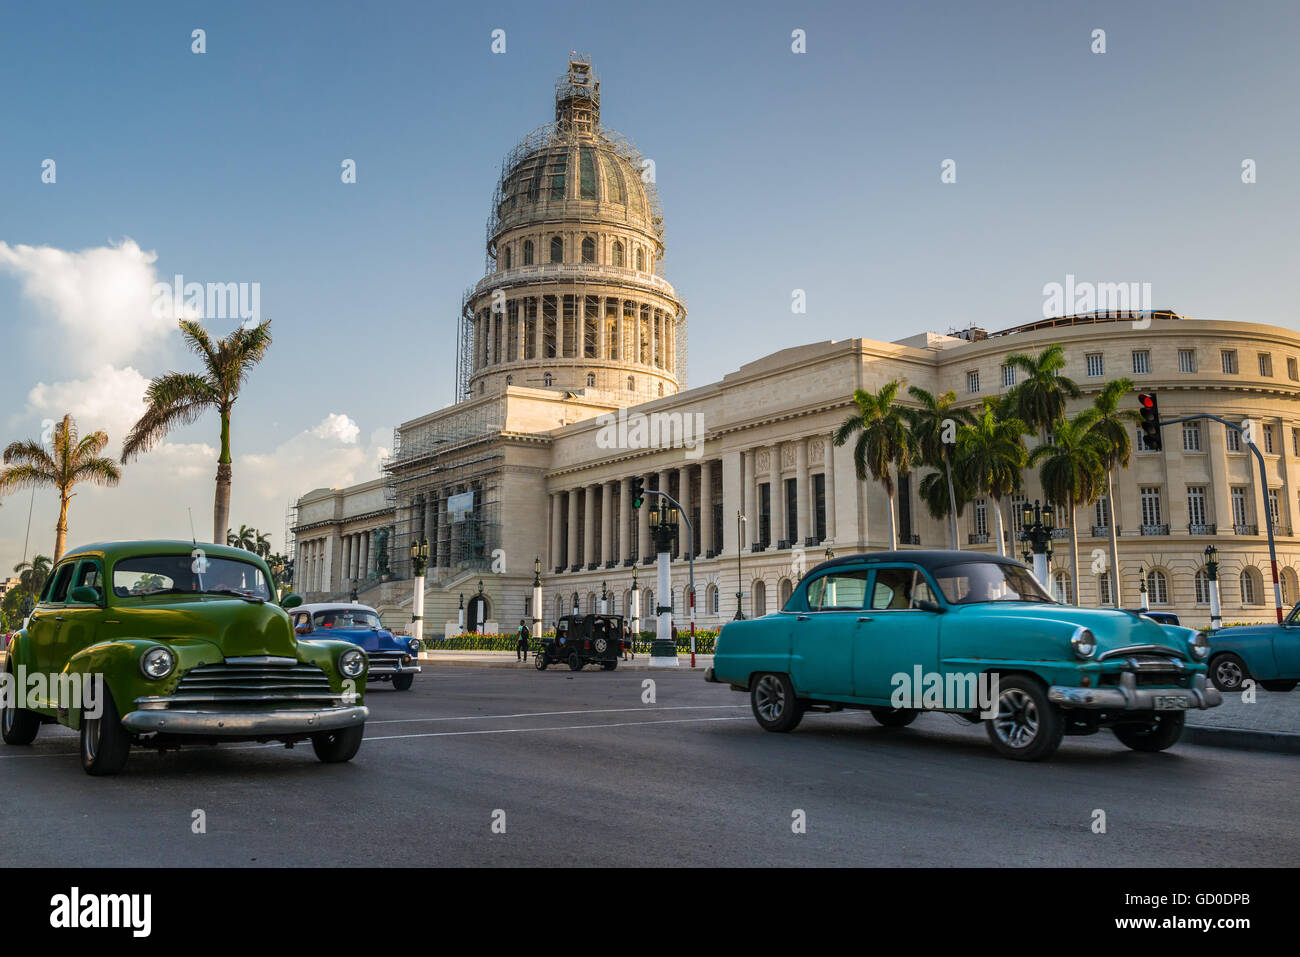 Carros antiguos pase el edificio del Capitolio en La Habana, Cuba. Foto de stock